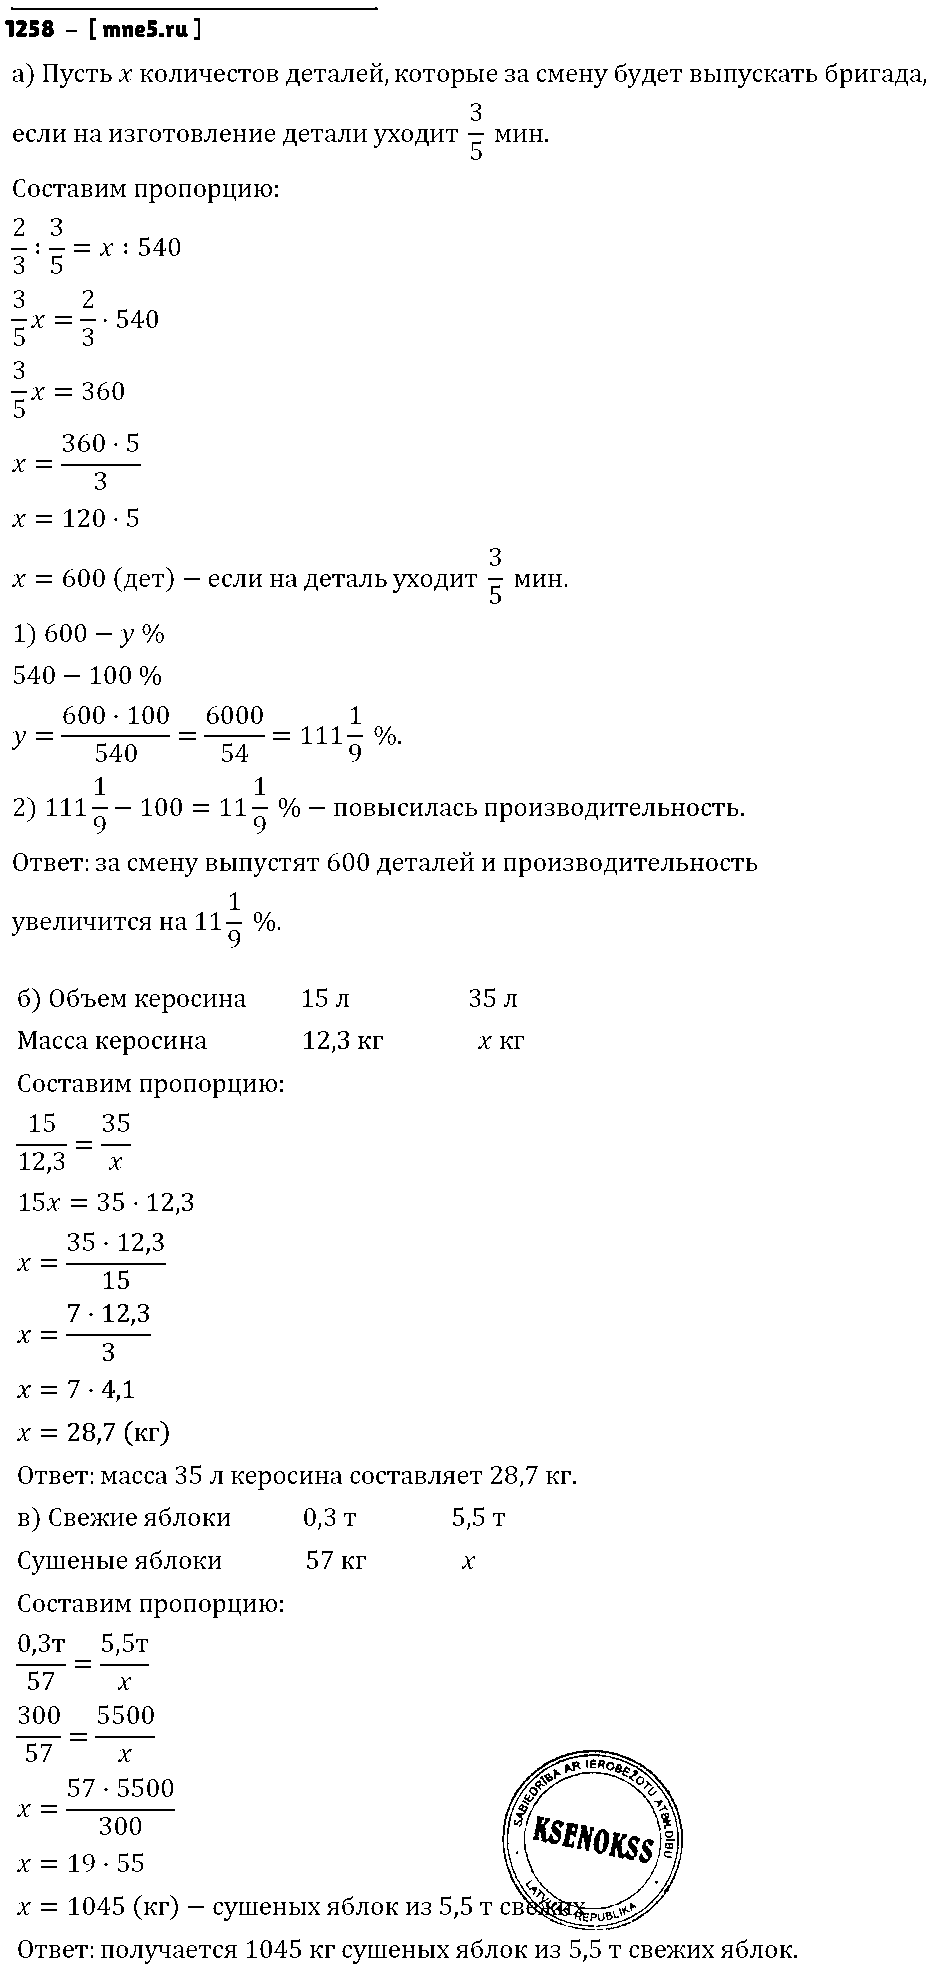 ГДЗ Математика 6 класс - 1258